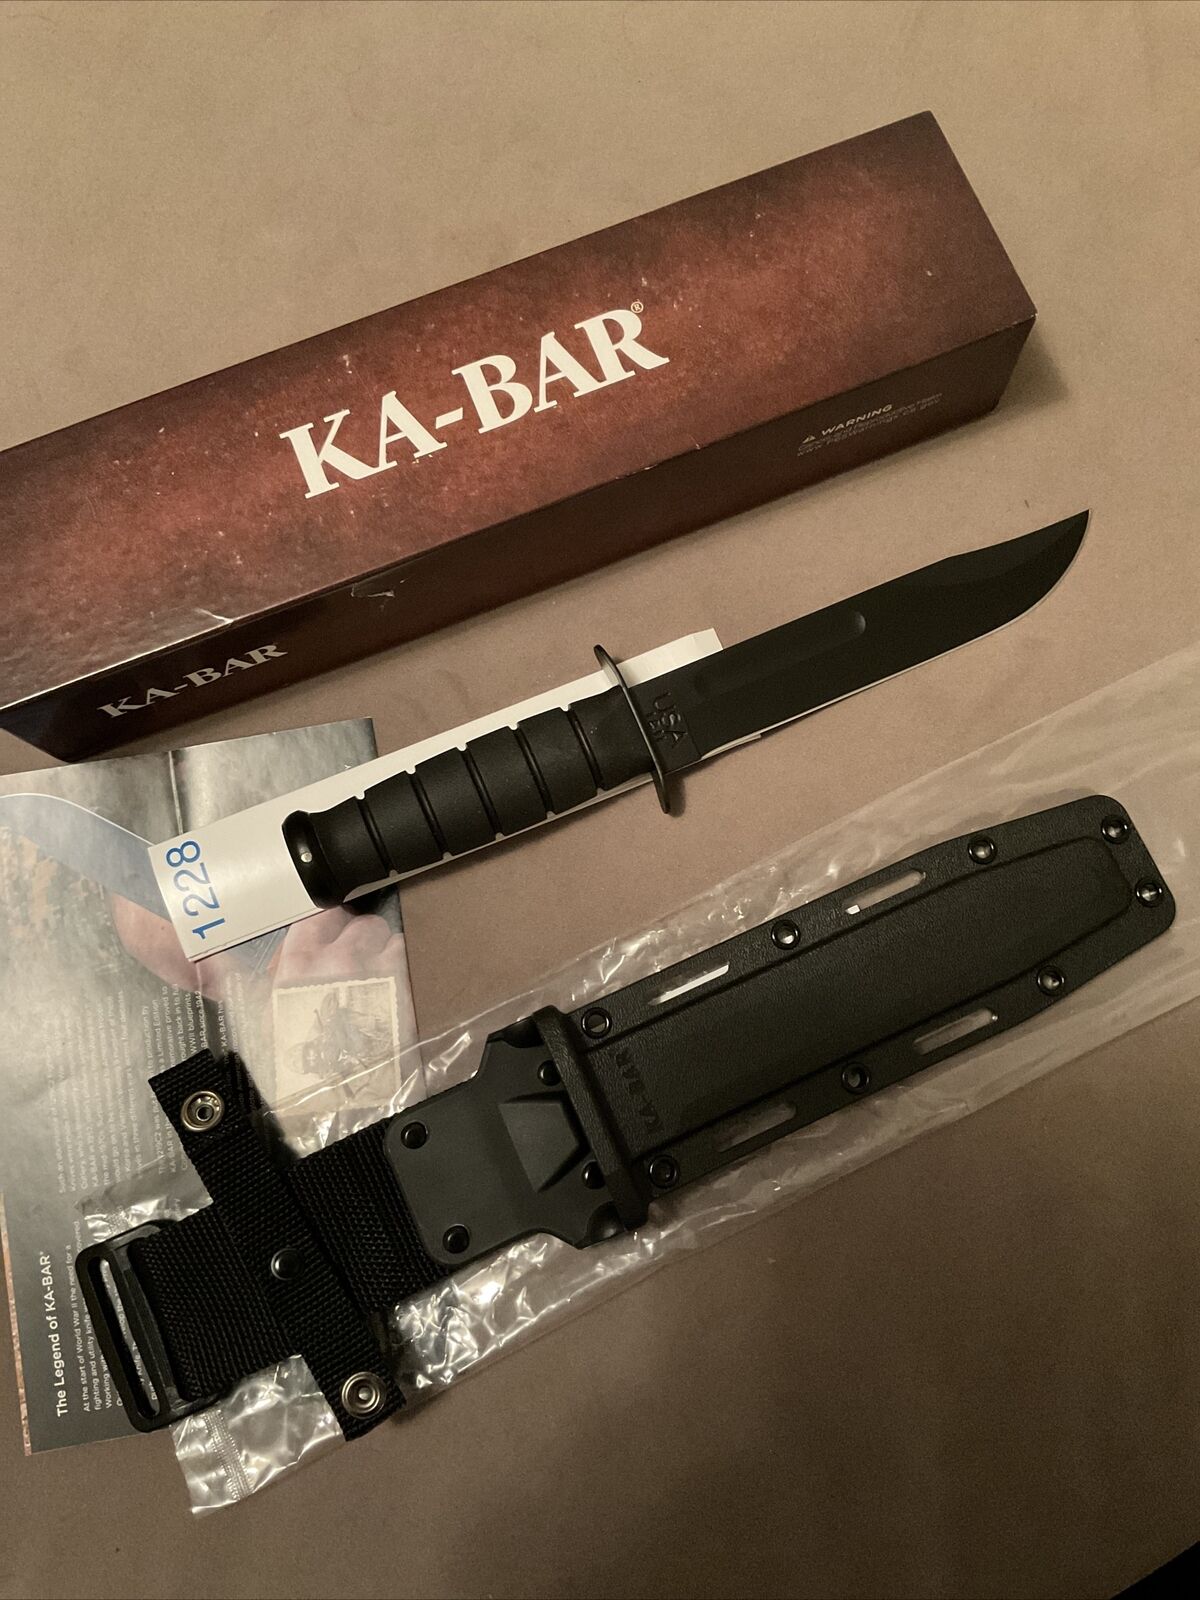 ka-bar 1228 New In Box